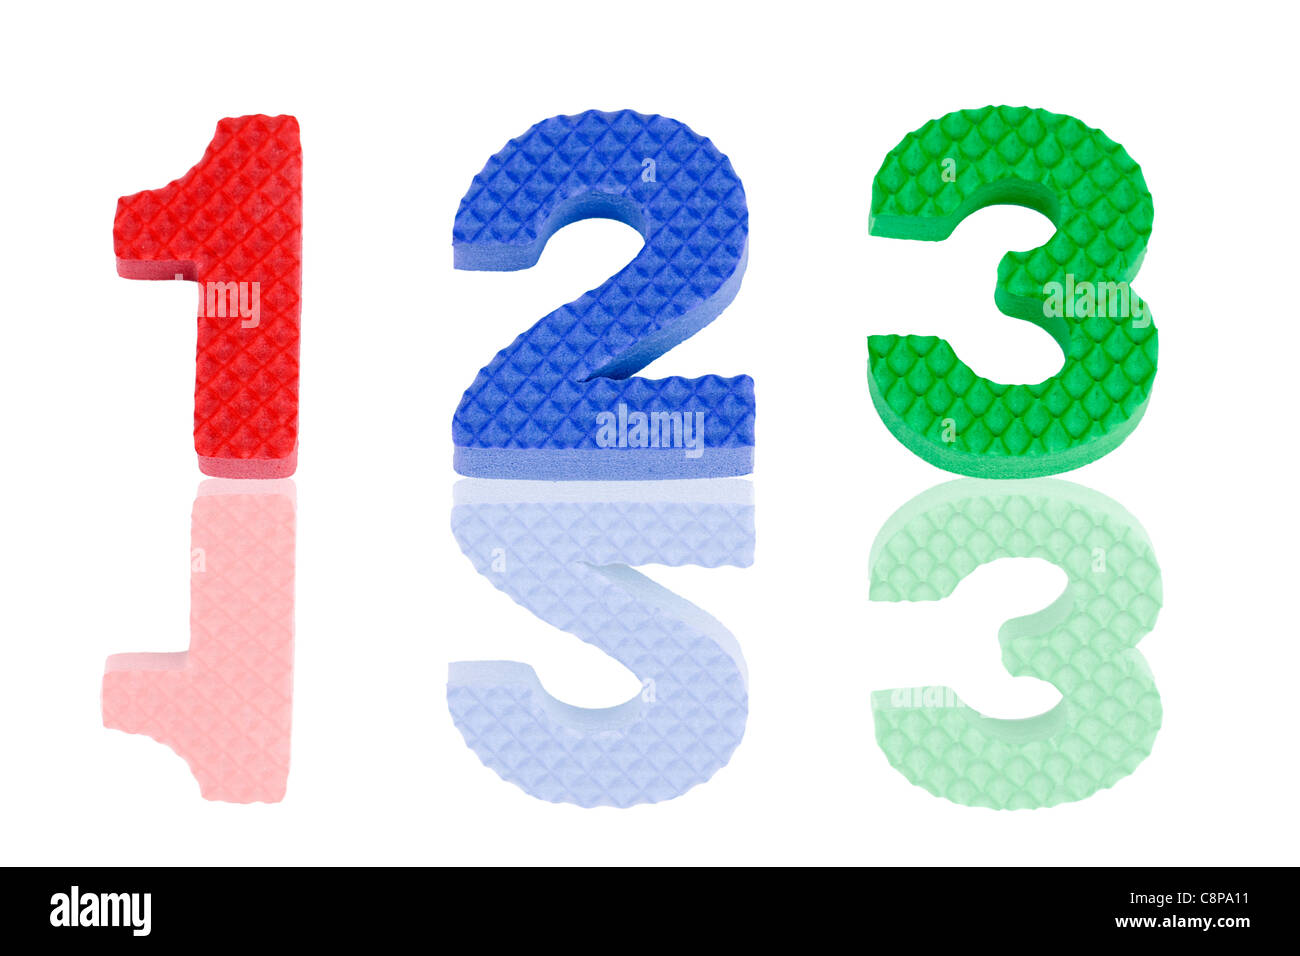 Pädagogisches Spielzeug: Fun bunte 1 2 3 arabische Zahlen in rot, blau und grün strukturiert Schaum mit Reflexionen. Stockfoto